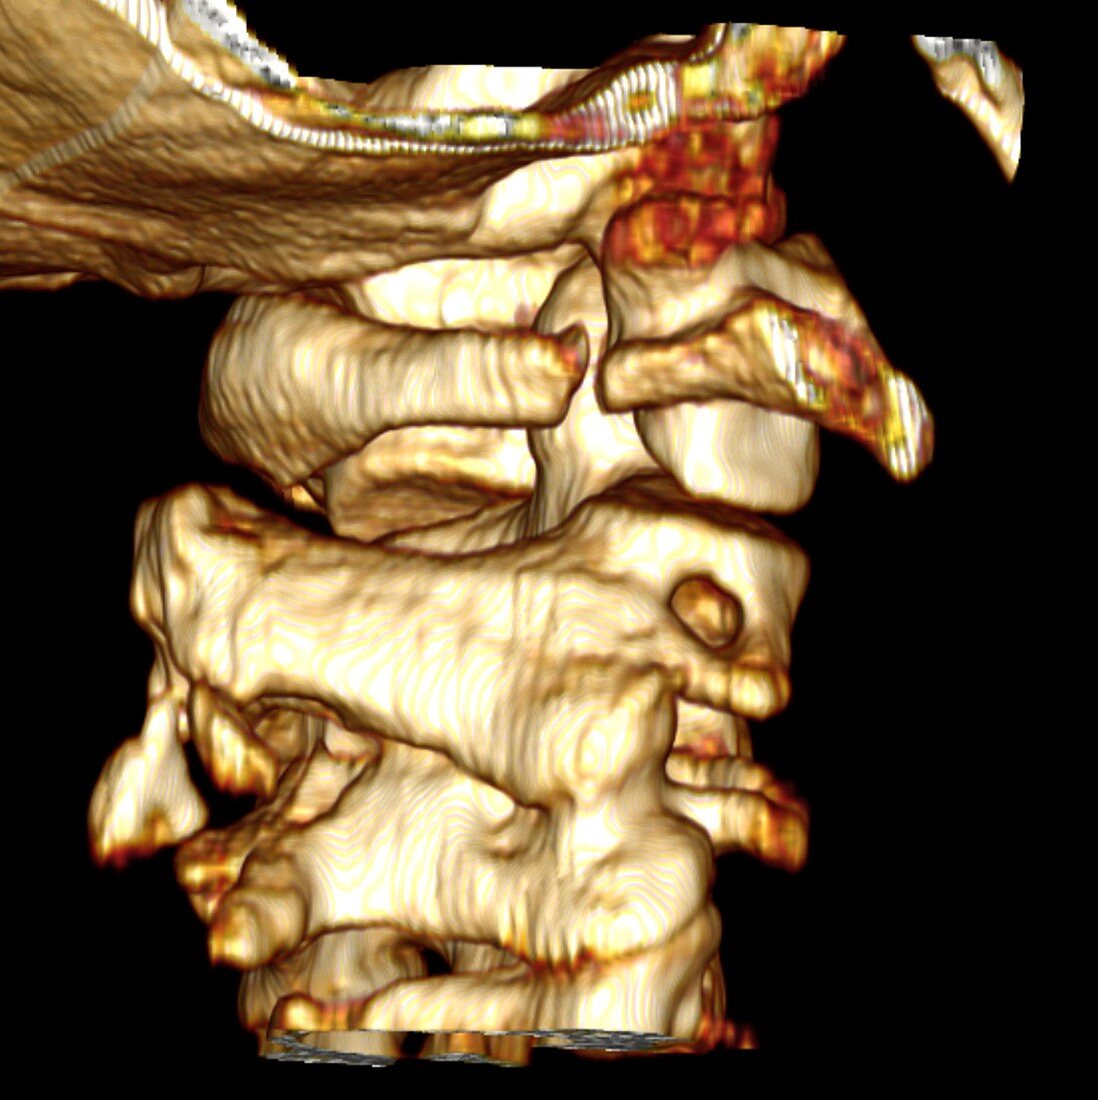 Fractured atlas vertebra,3D CT scan